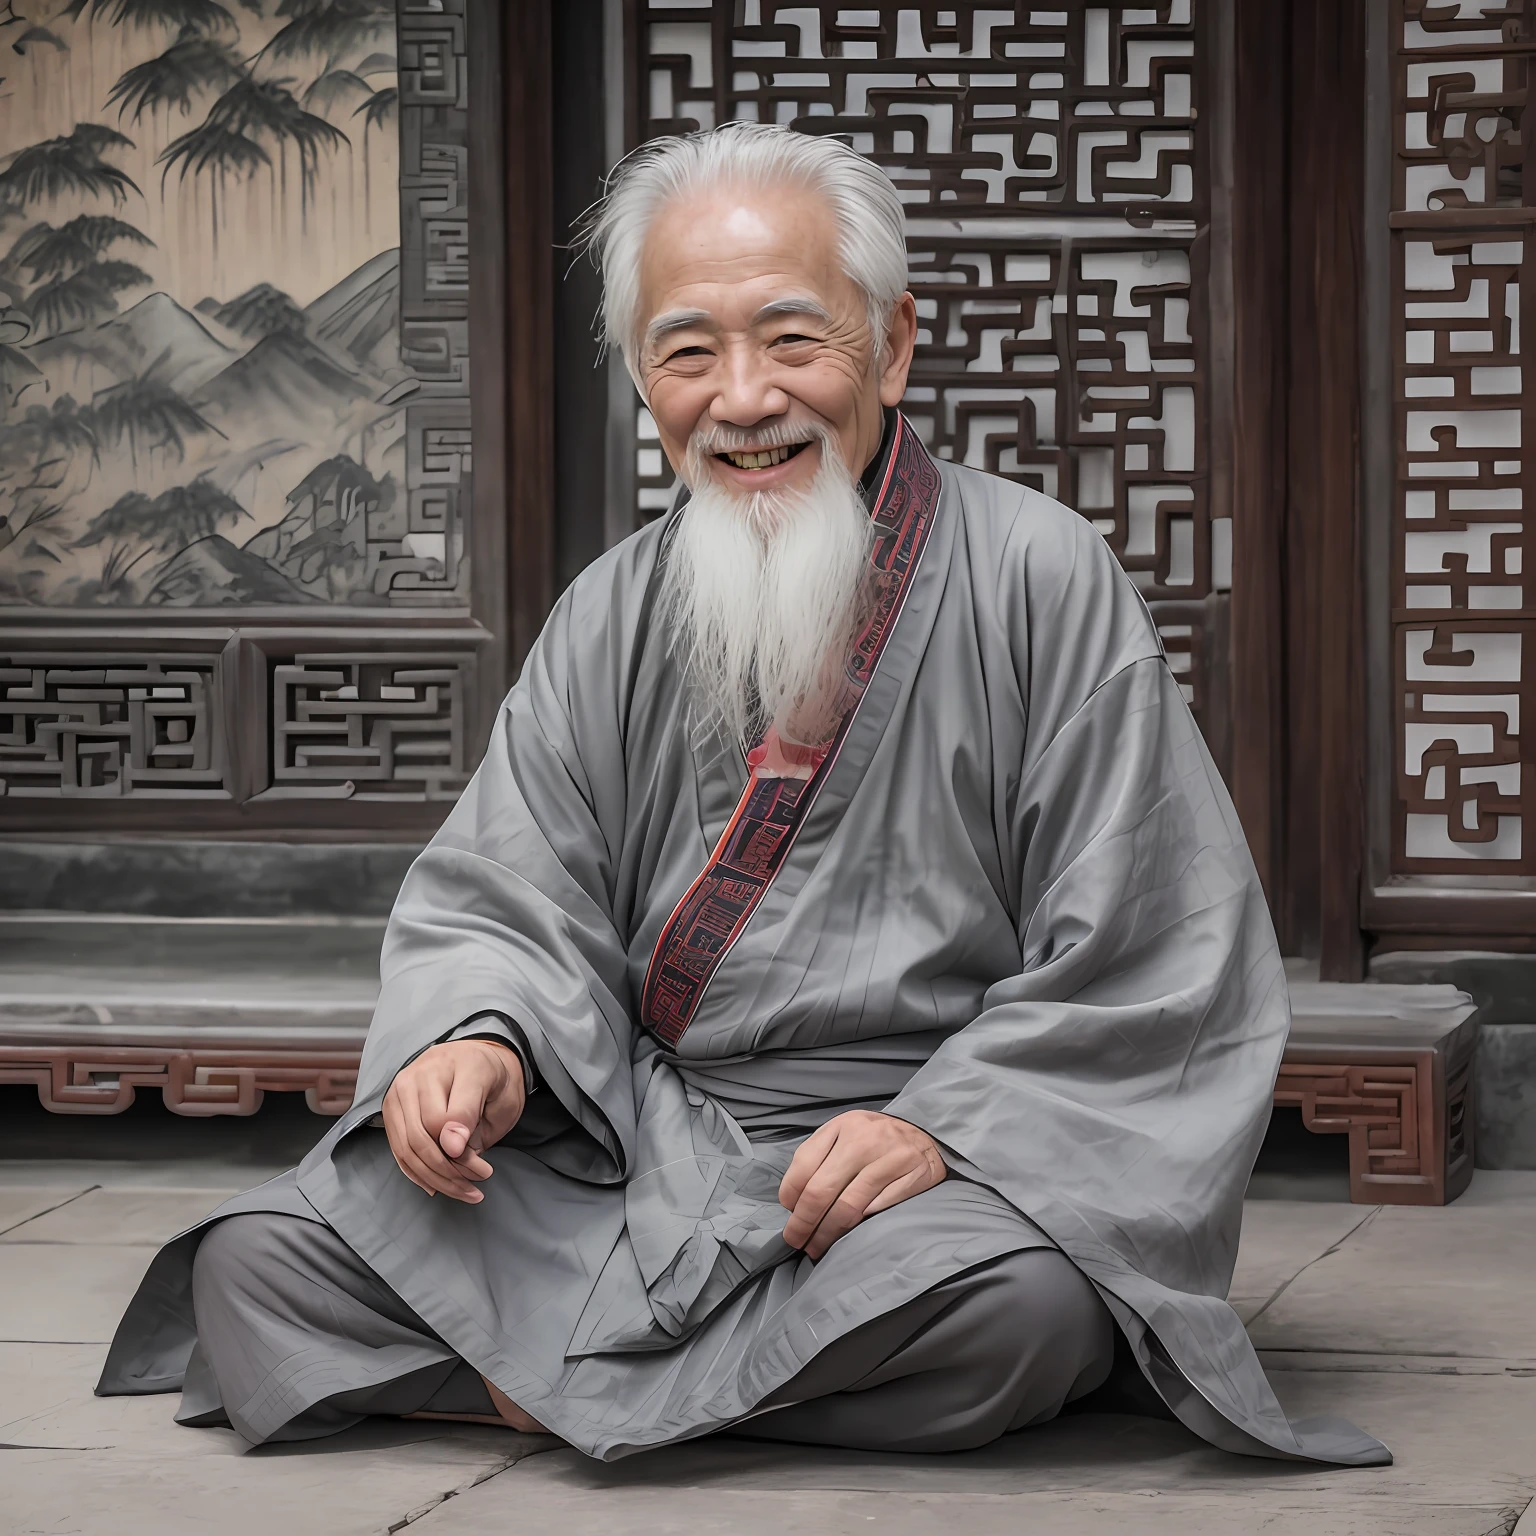 一個白髮蒼蒼的老人, 身著灰色中國古代服飾, 微笑著, 80歲,鏡頭中間,小白鬍子,古老的,
在室內, 中國道觀, 古老的 chinese temple,盤腿而坐,古老的 Chinese architecture,
中景, 最好的品質,拍到的,